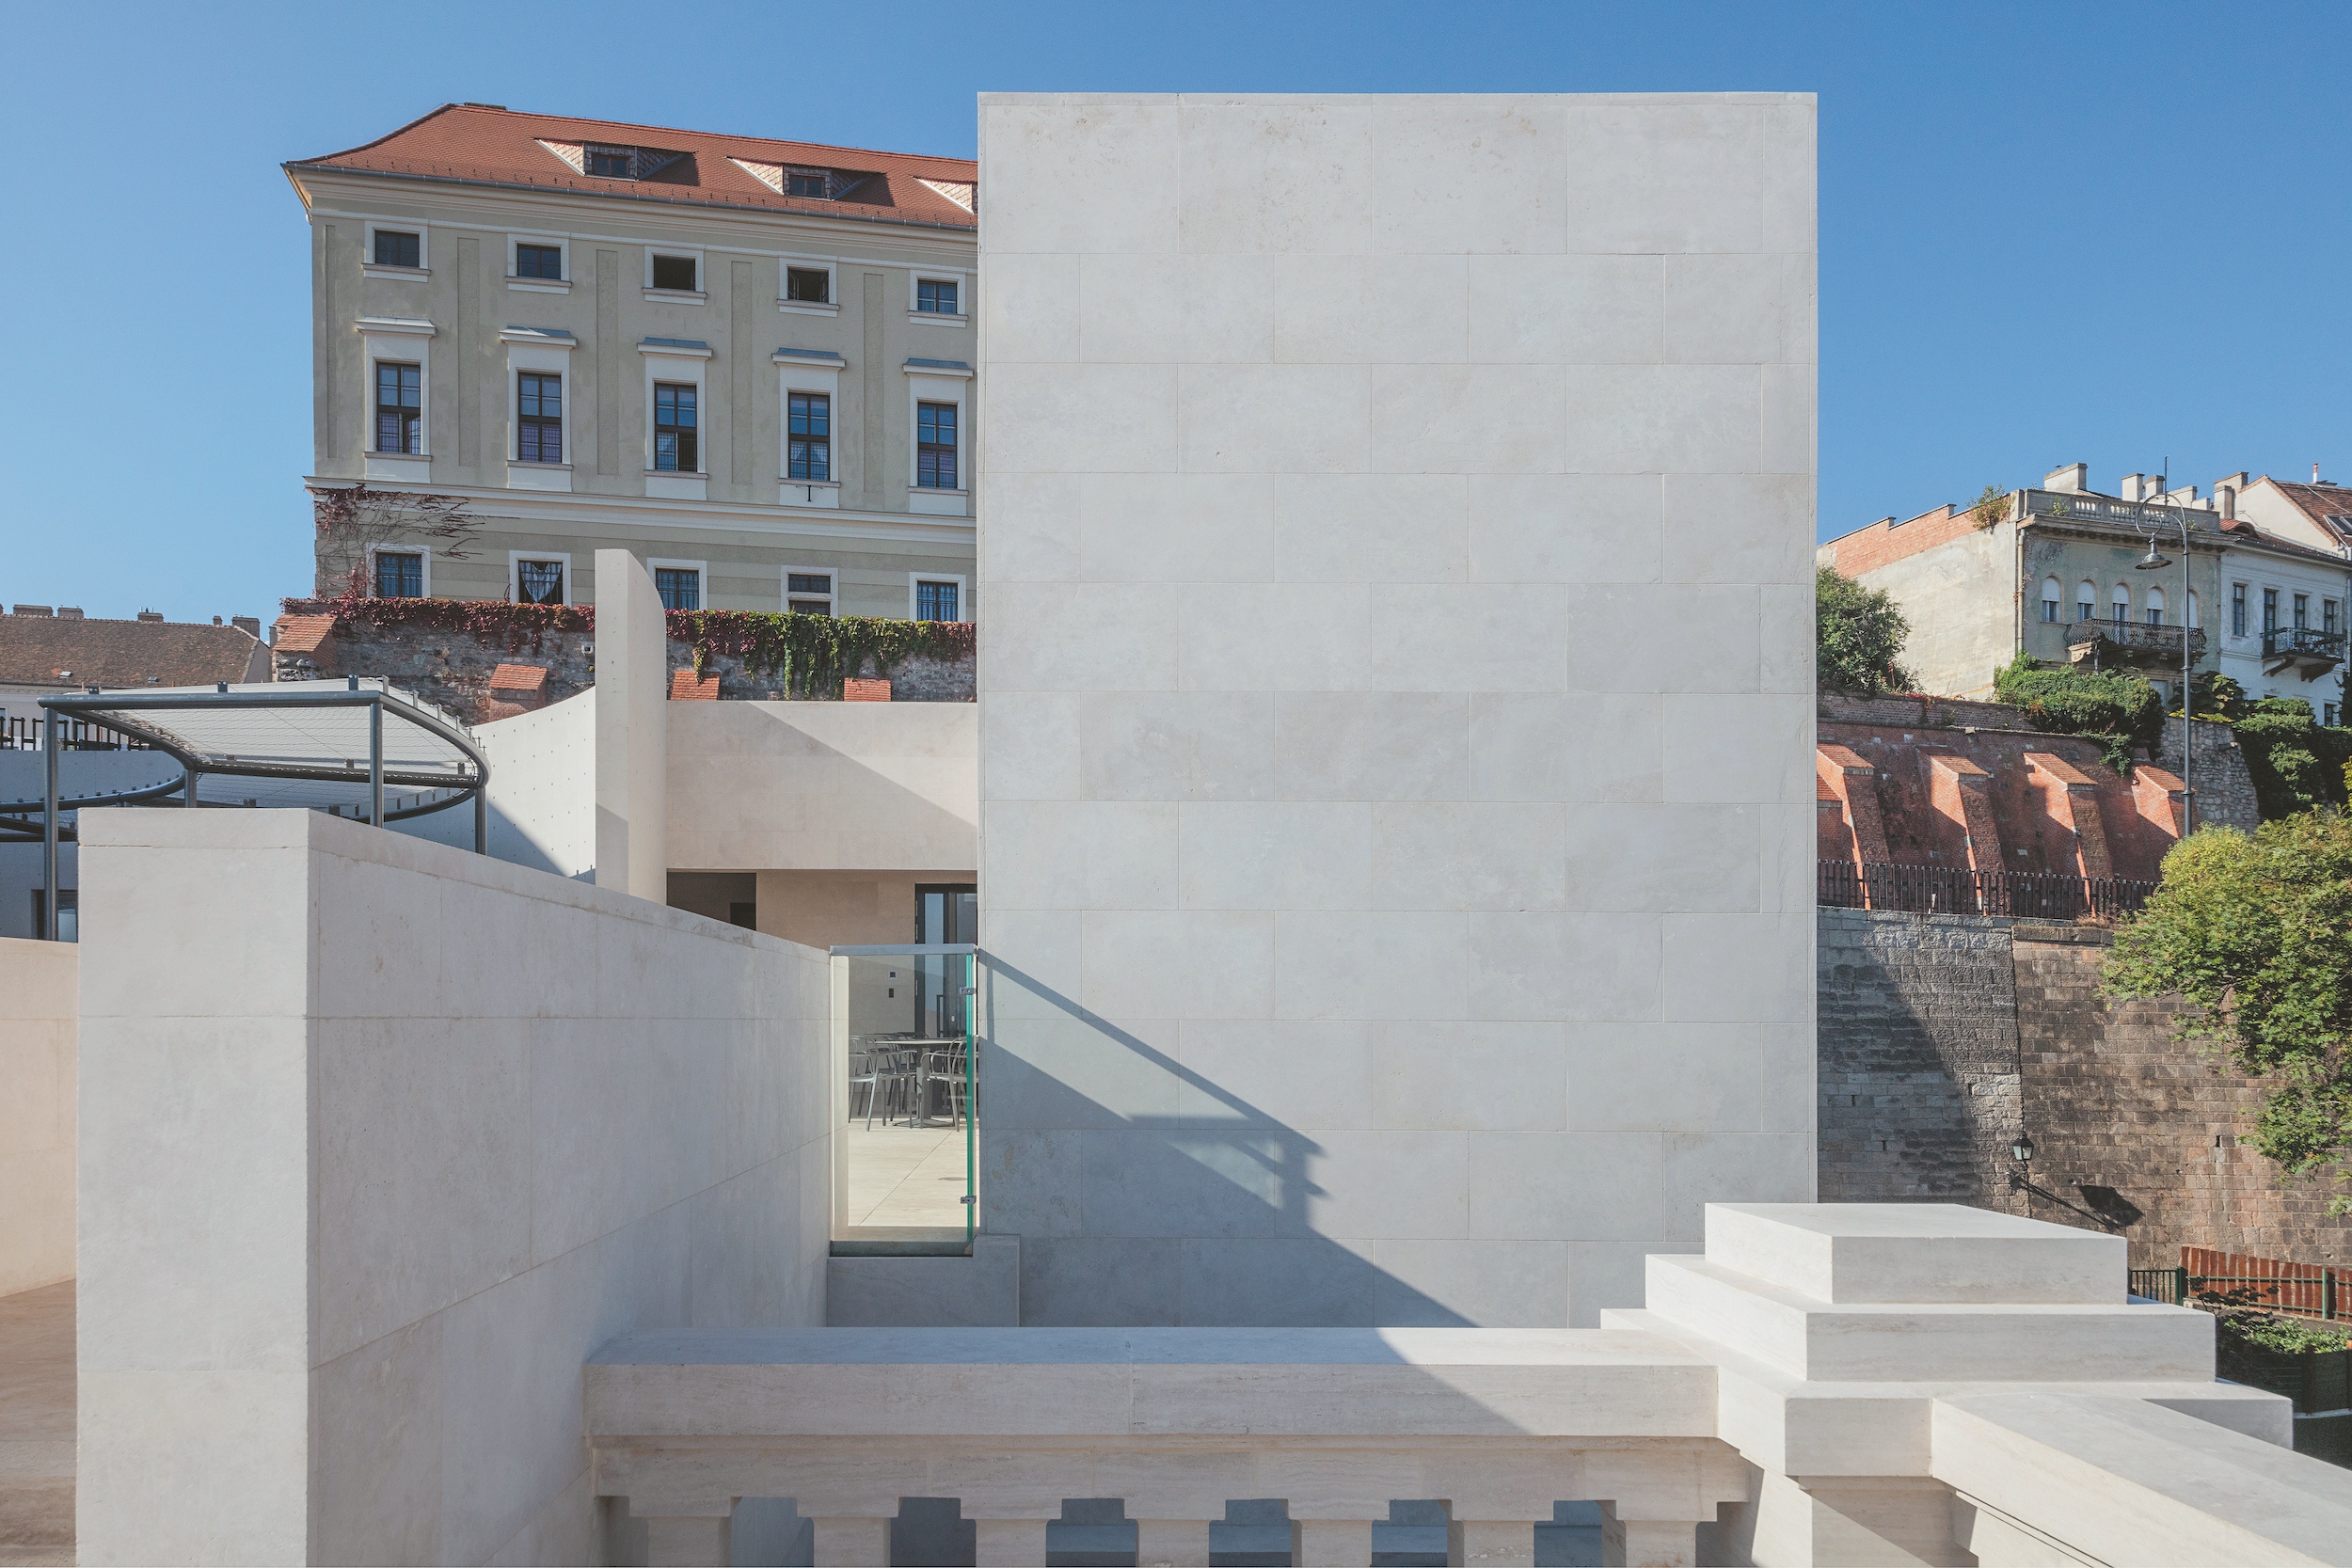 Az eredeti villaépület erős, karakteres ellenpontjaként hoz létre új térfalat az eredetileg művészrezidenciaként felépült minimalista épületszárny